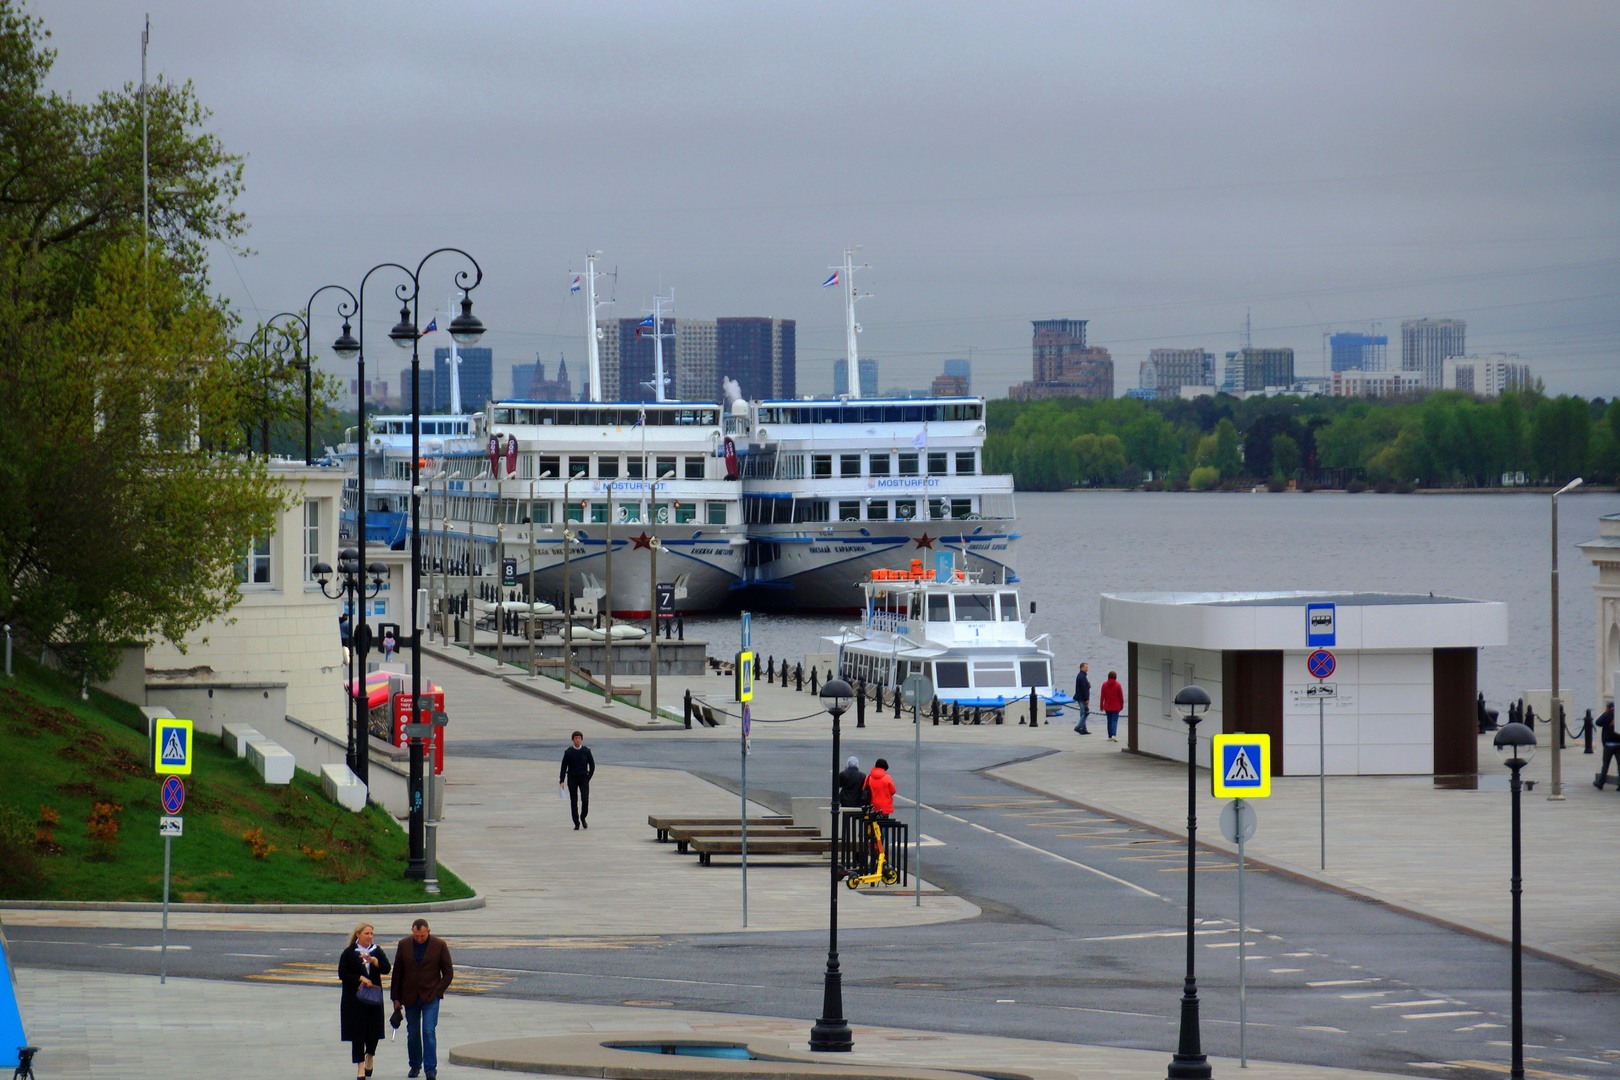 Камера на речном вокзале томск. Речной вокзал Барнаул. Речной вокзал Барнаул фото. На камере по реке.